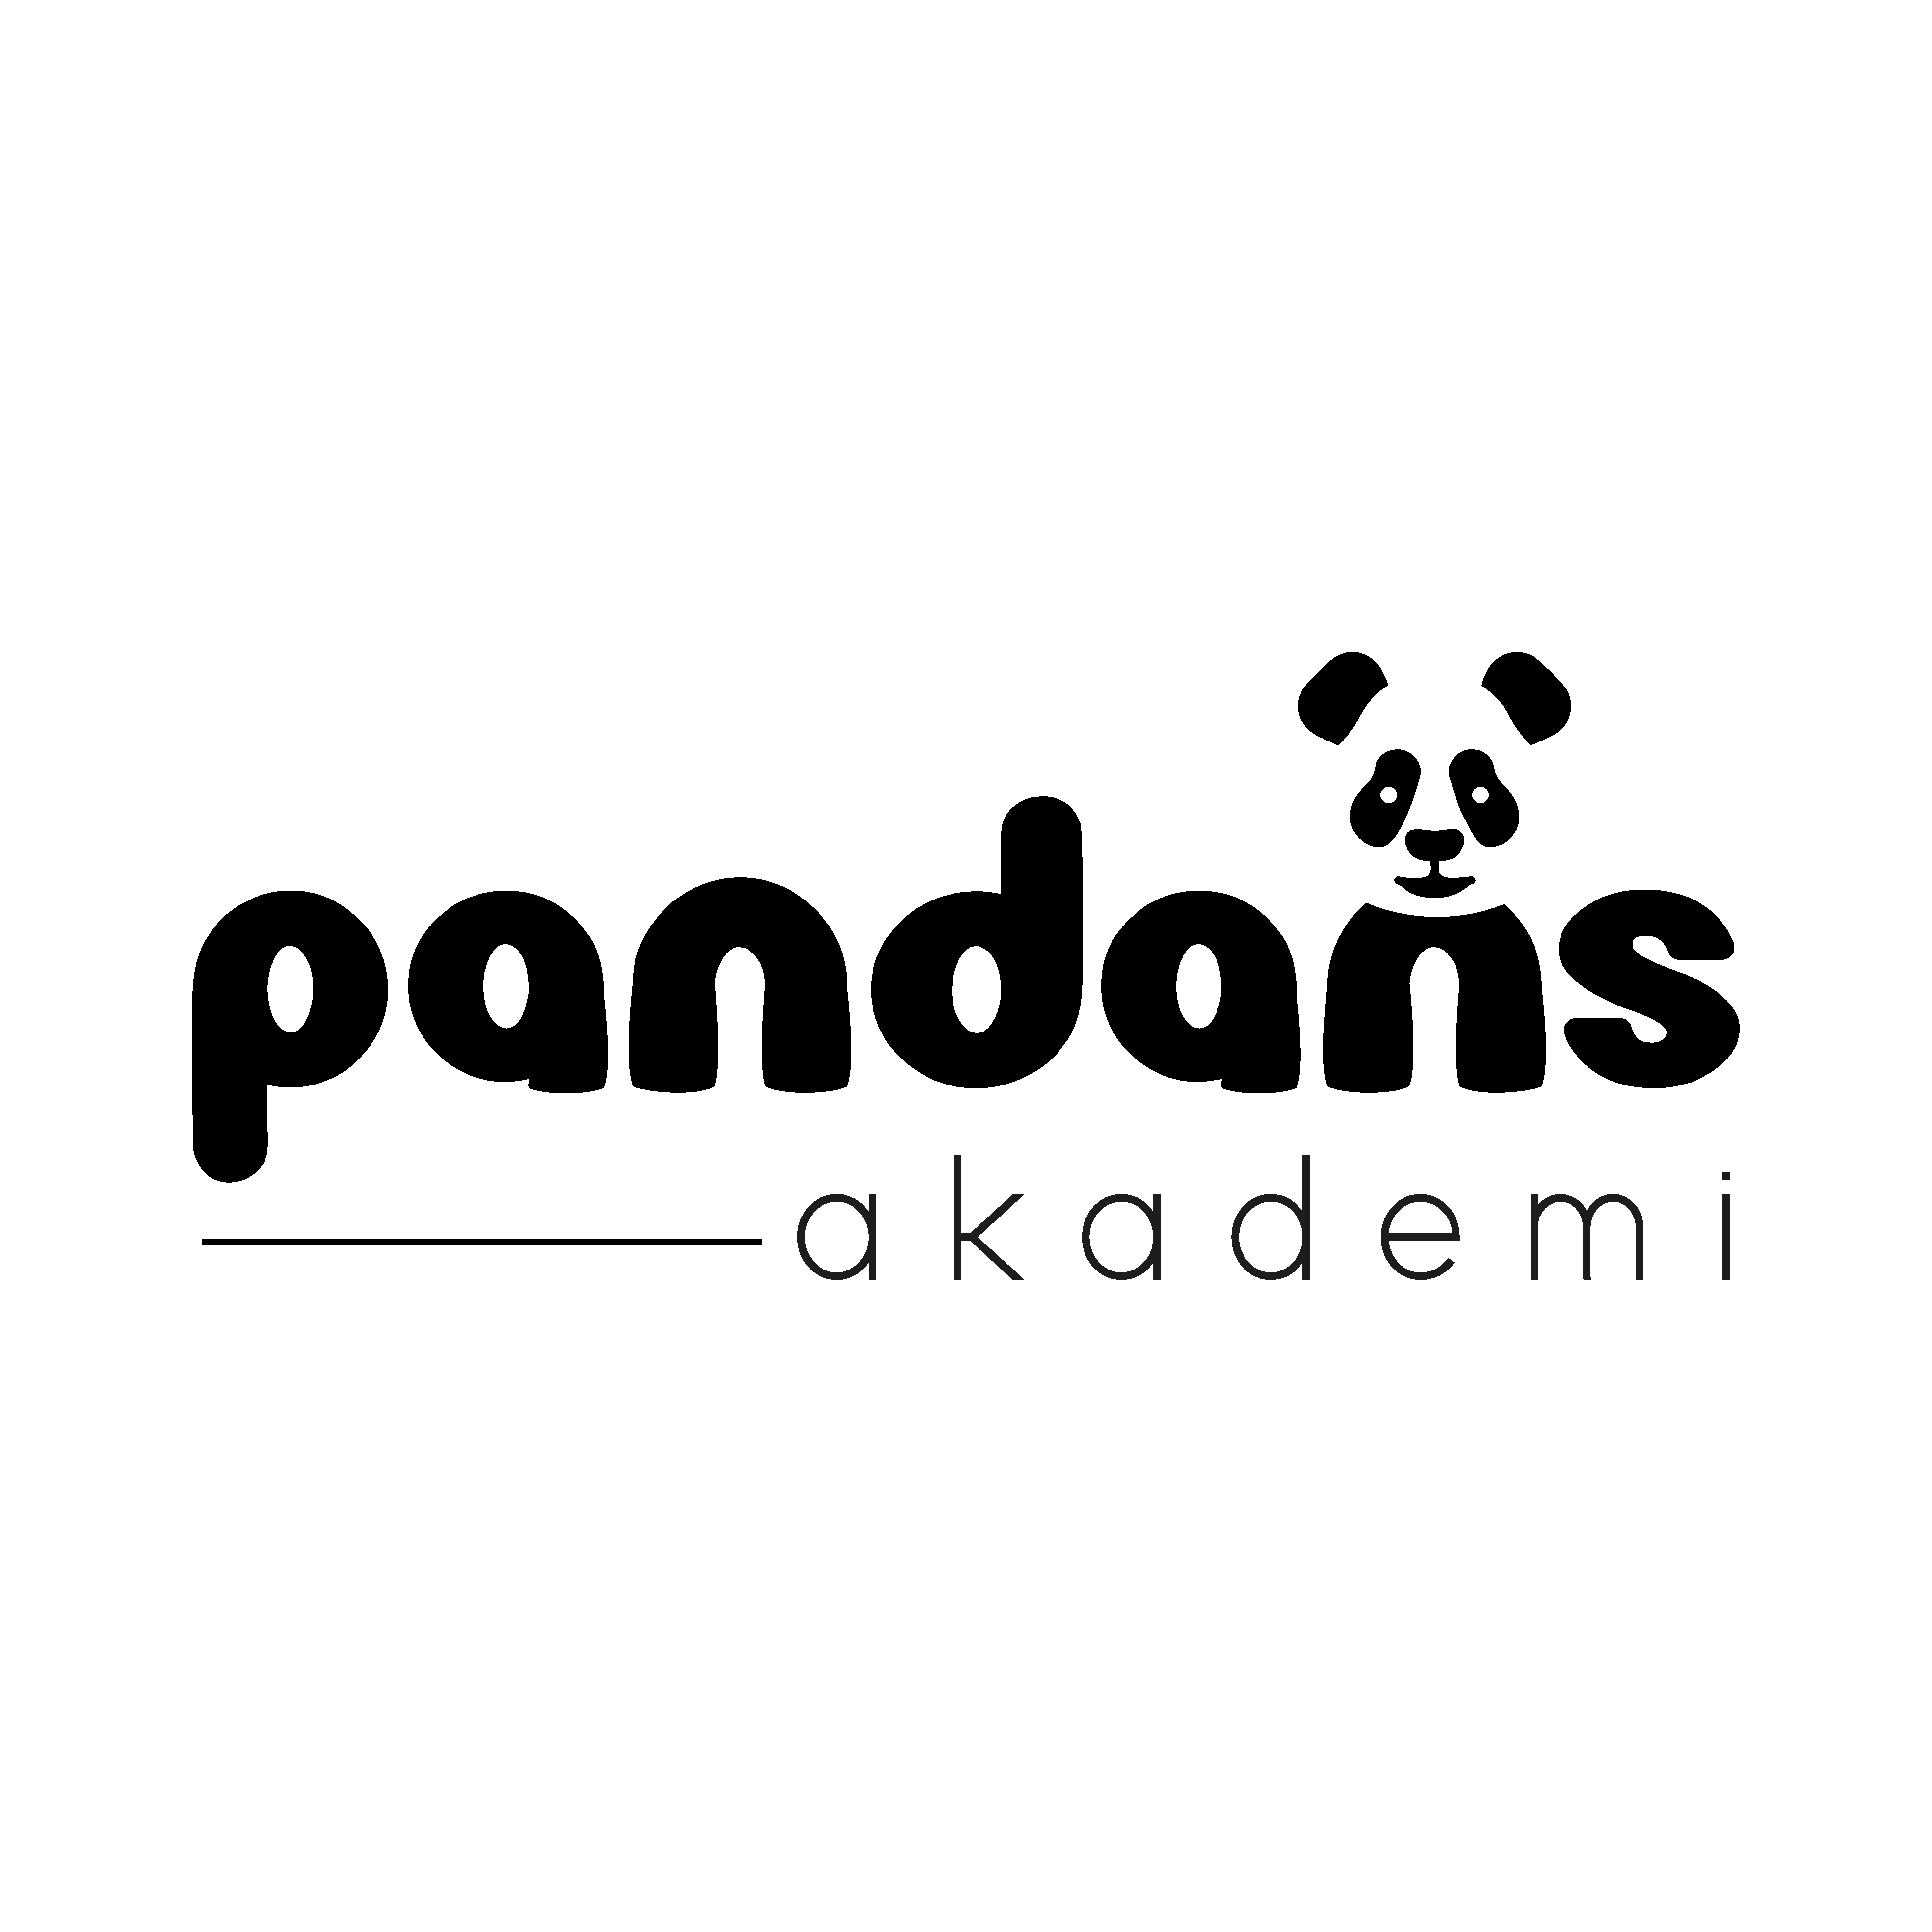 Pandans Akademi